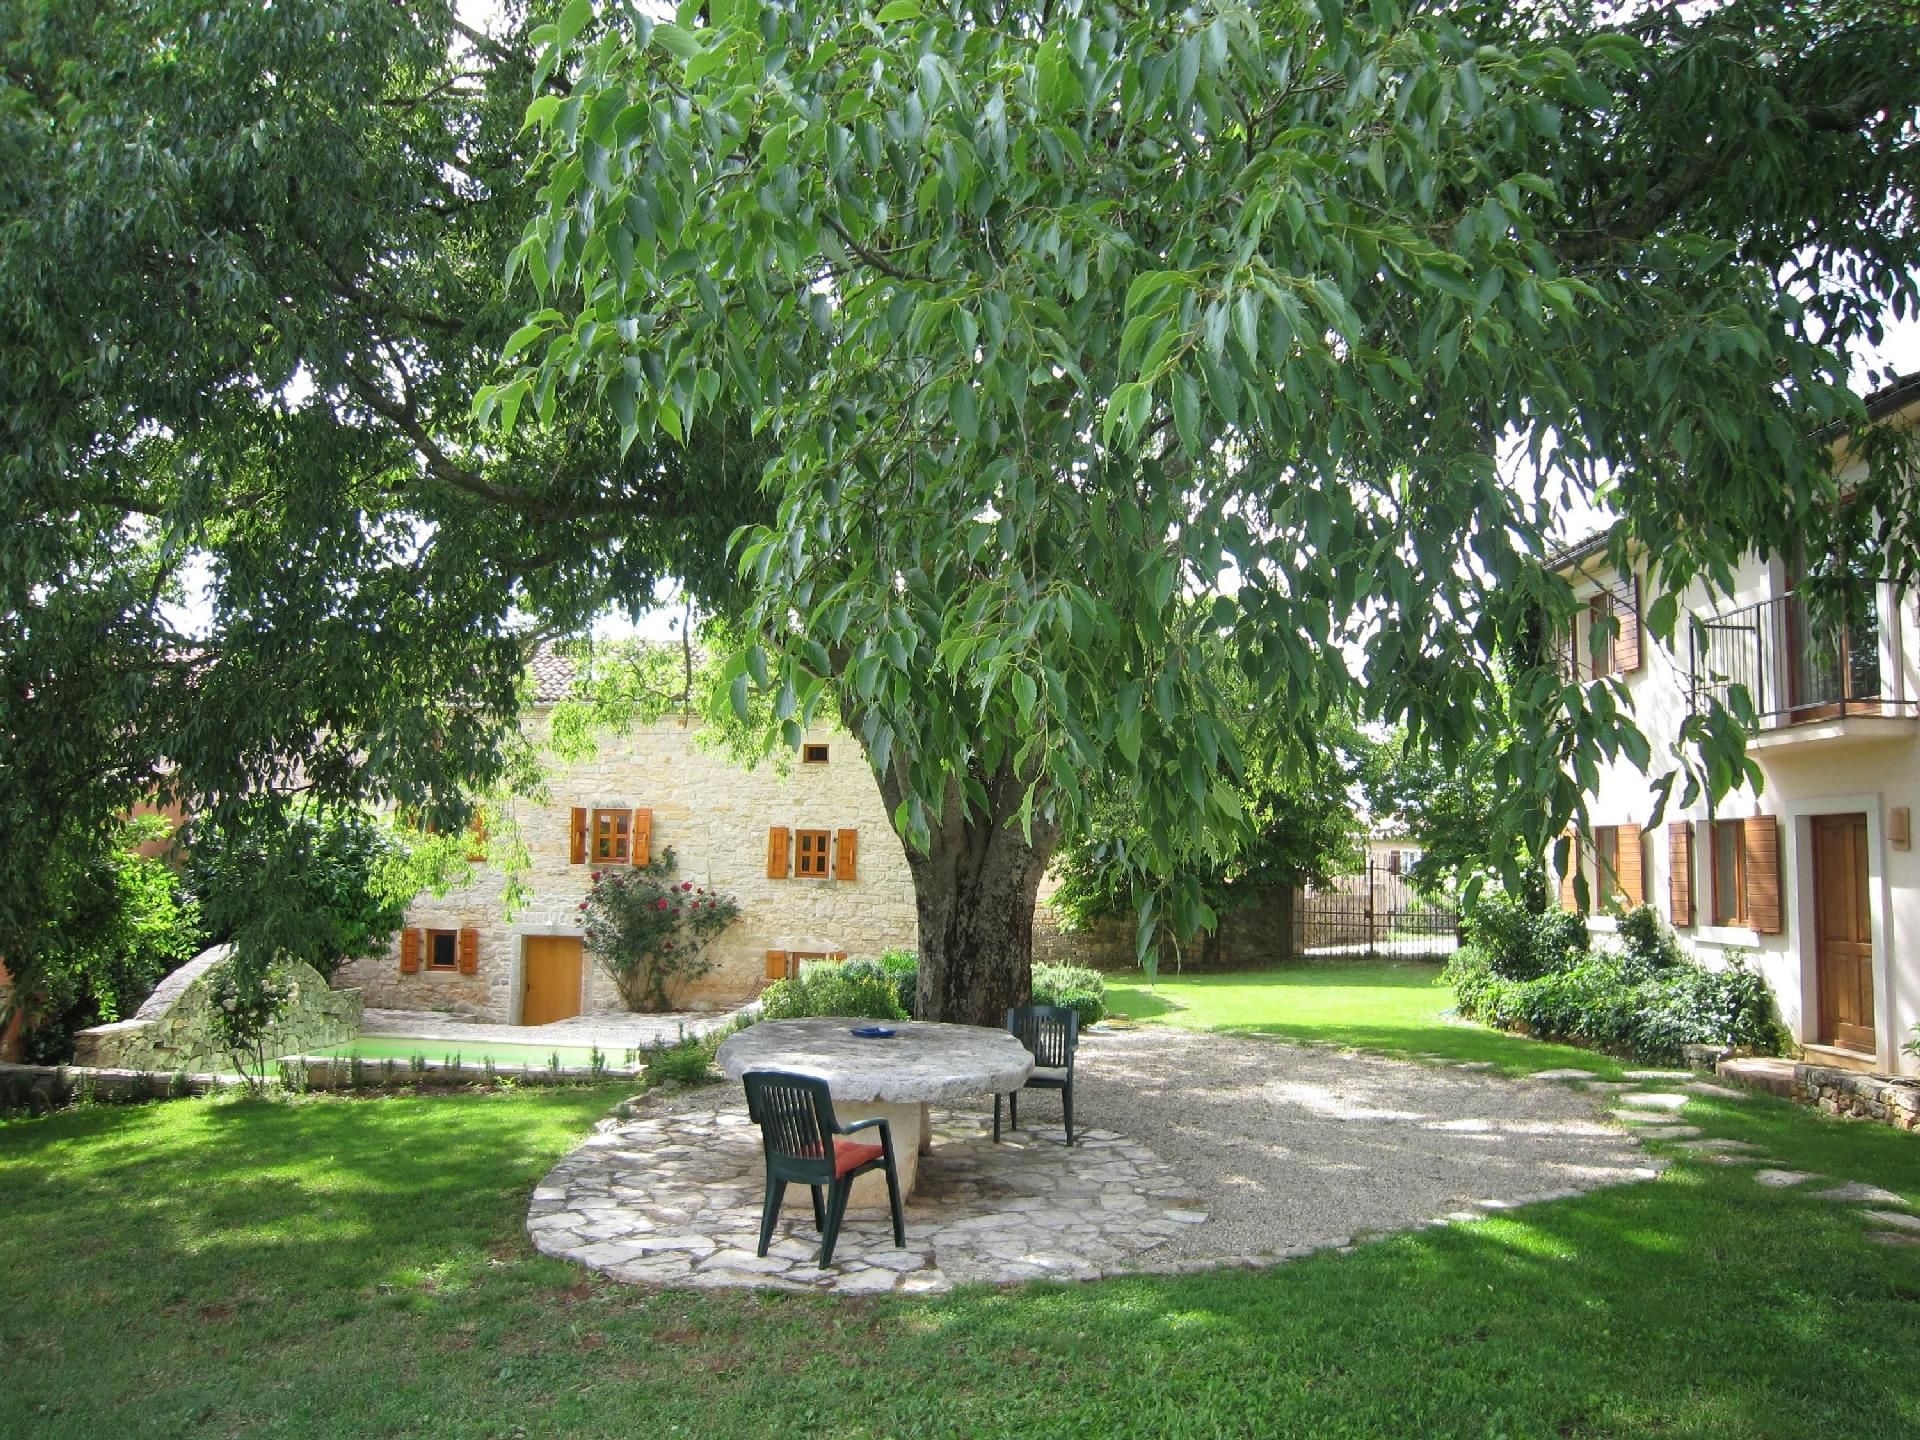 Ferienhaus auf zwei Etagen mit gehobener Ausstattu Ferienhaus in Istrien